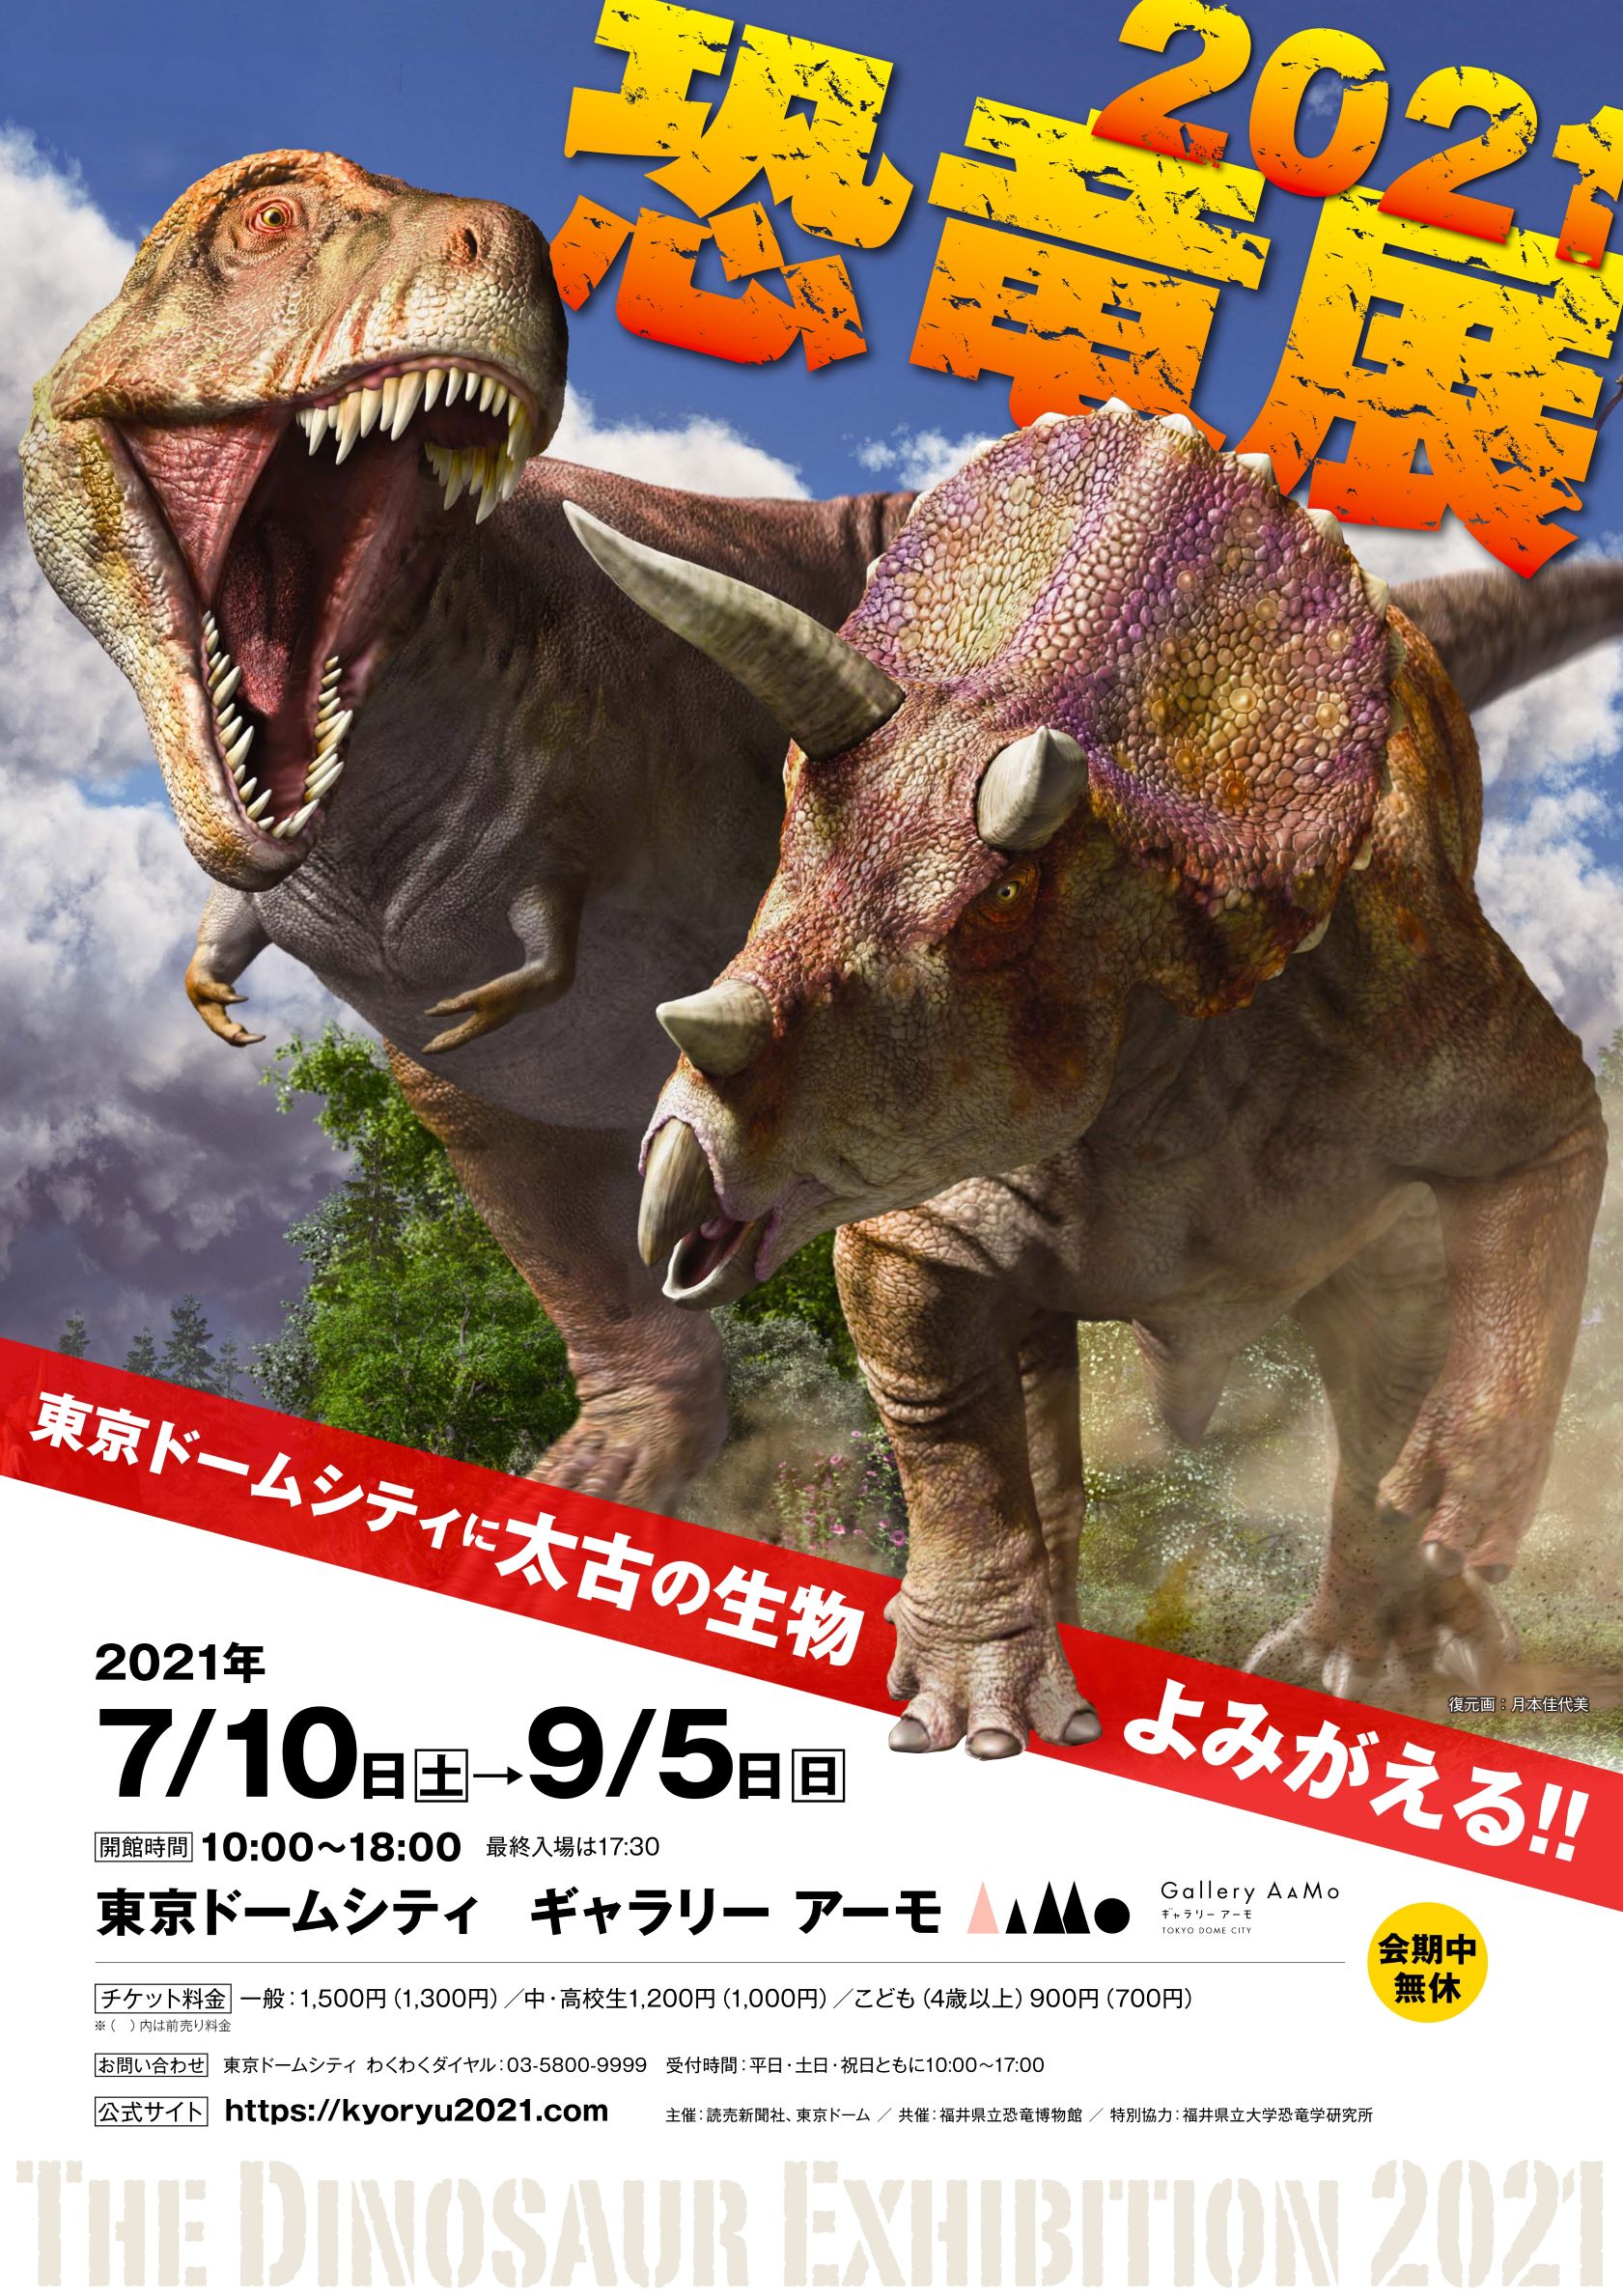 東京ドームシティ Gallery mo ギャラリー アーモ 恐竜展21 追加情報 夏休みの思い出作りにぴったりな企画を多数実施 株式会社東京 ドームのプレスリリース